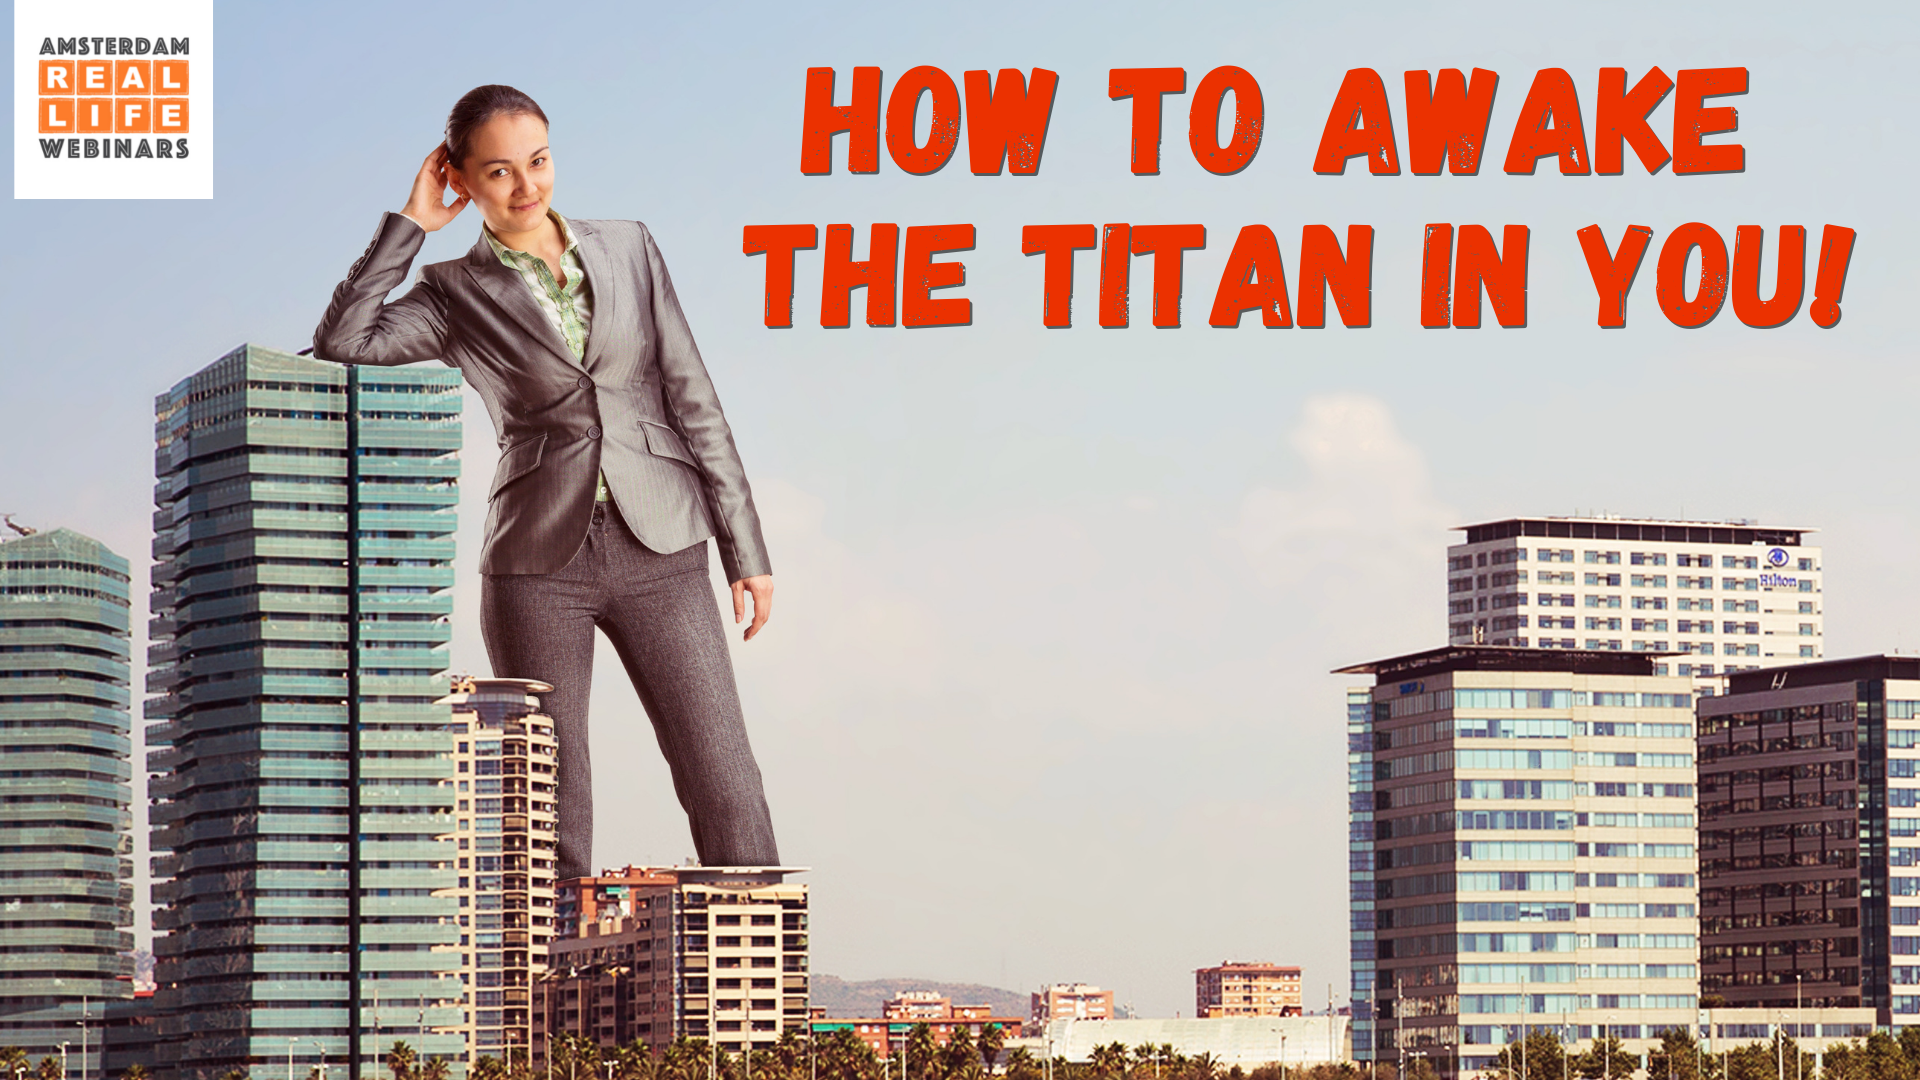 How to awake the titan in you!